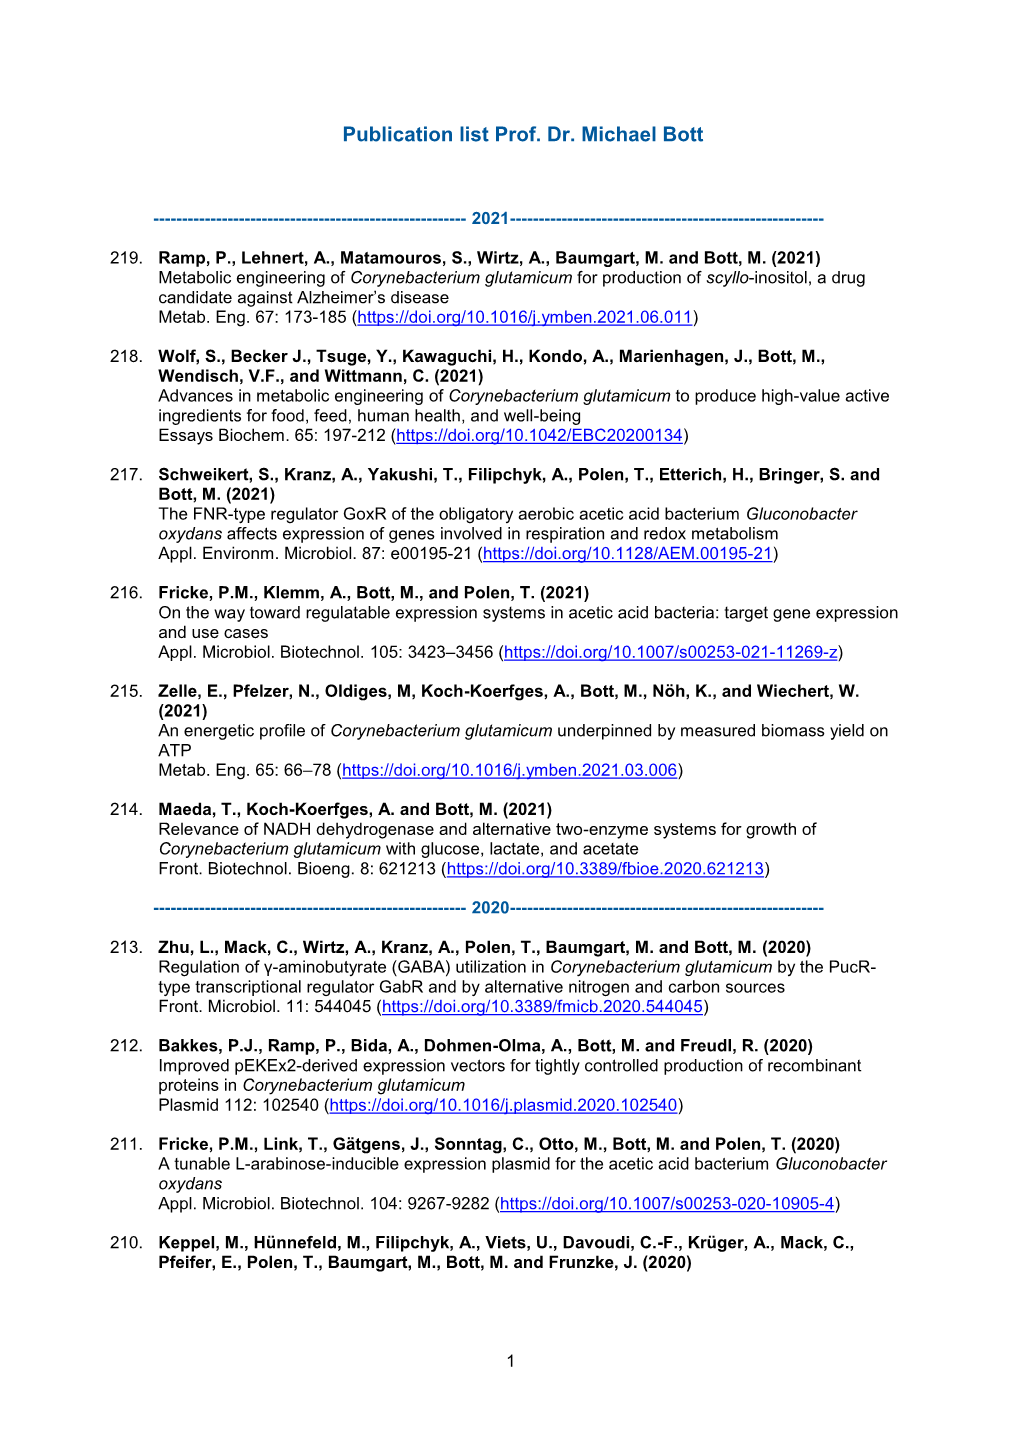 Publications (PDF, 381